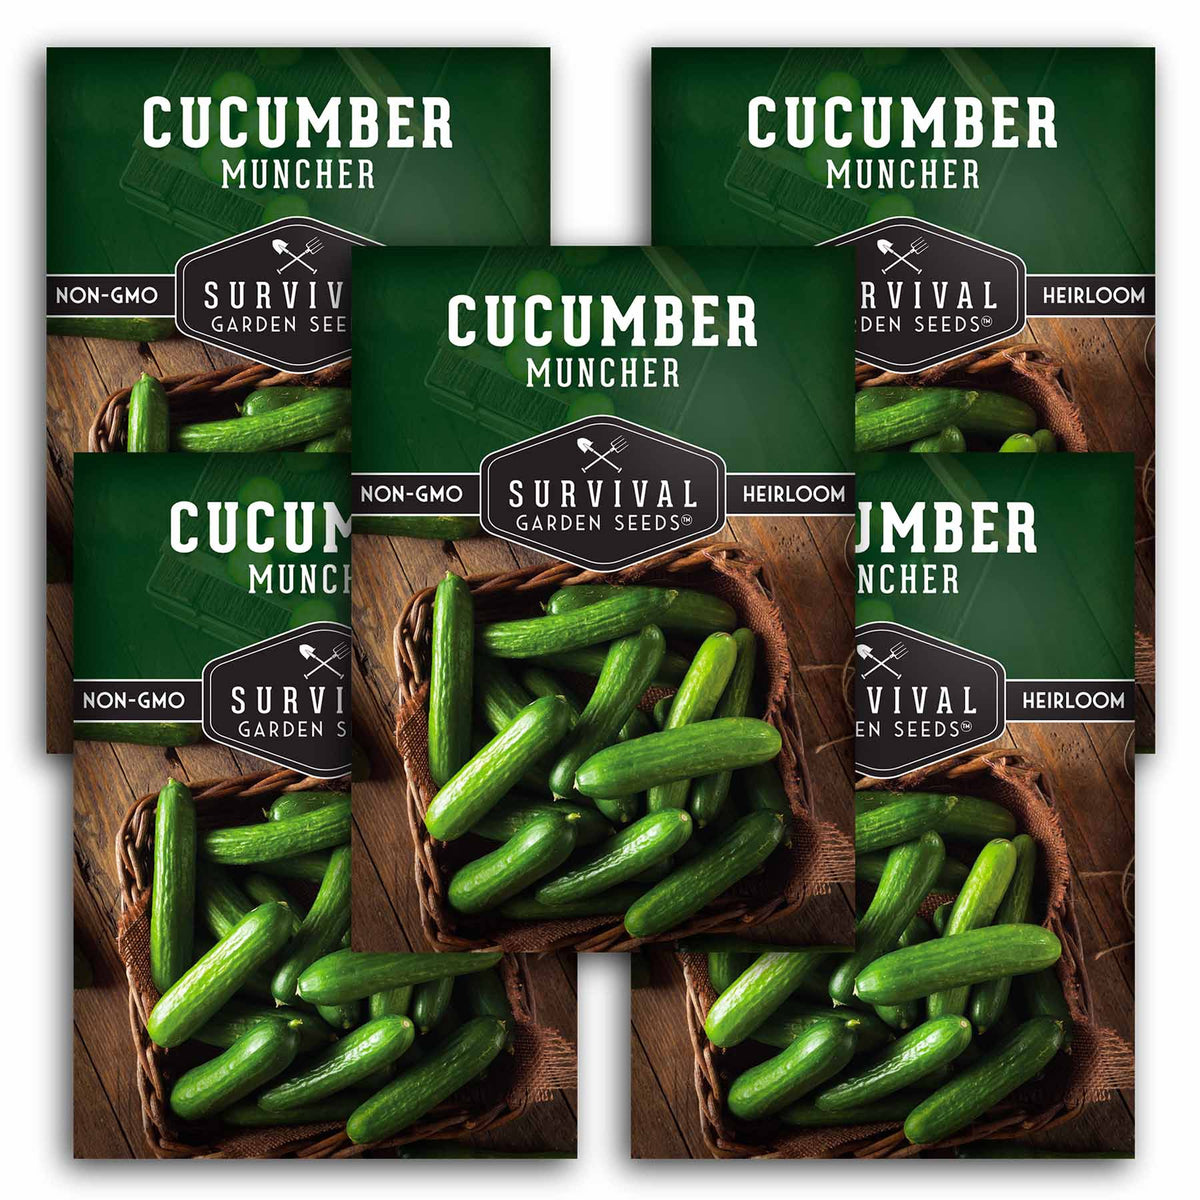 5 packets of Muncher Cucumber seeds